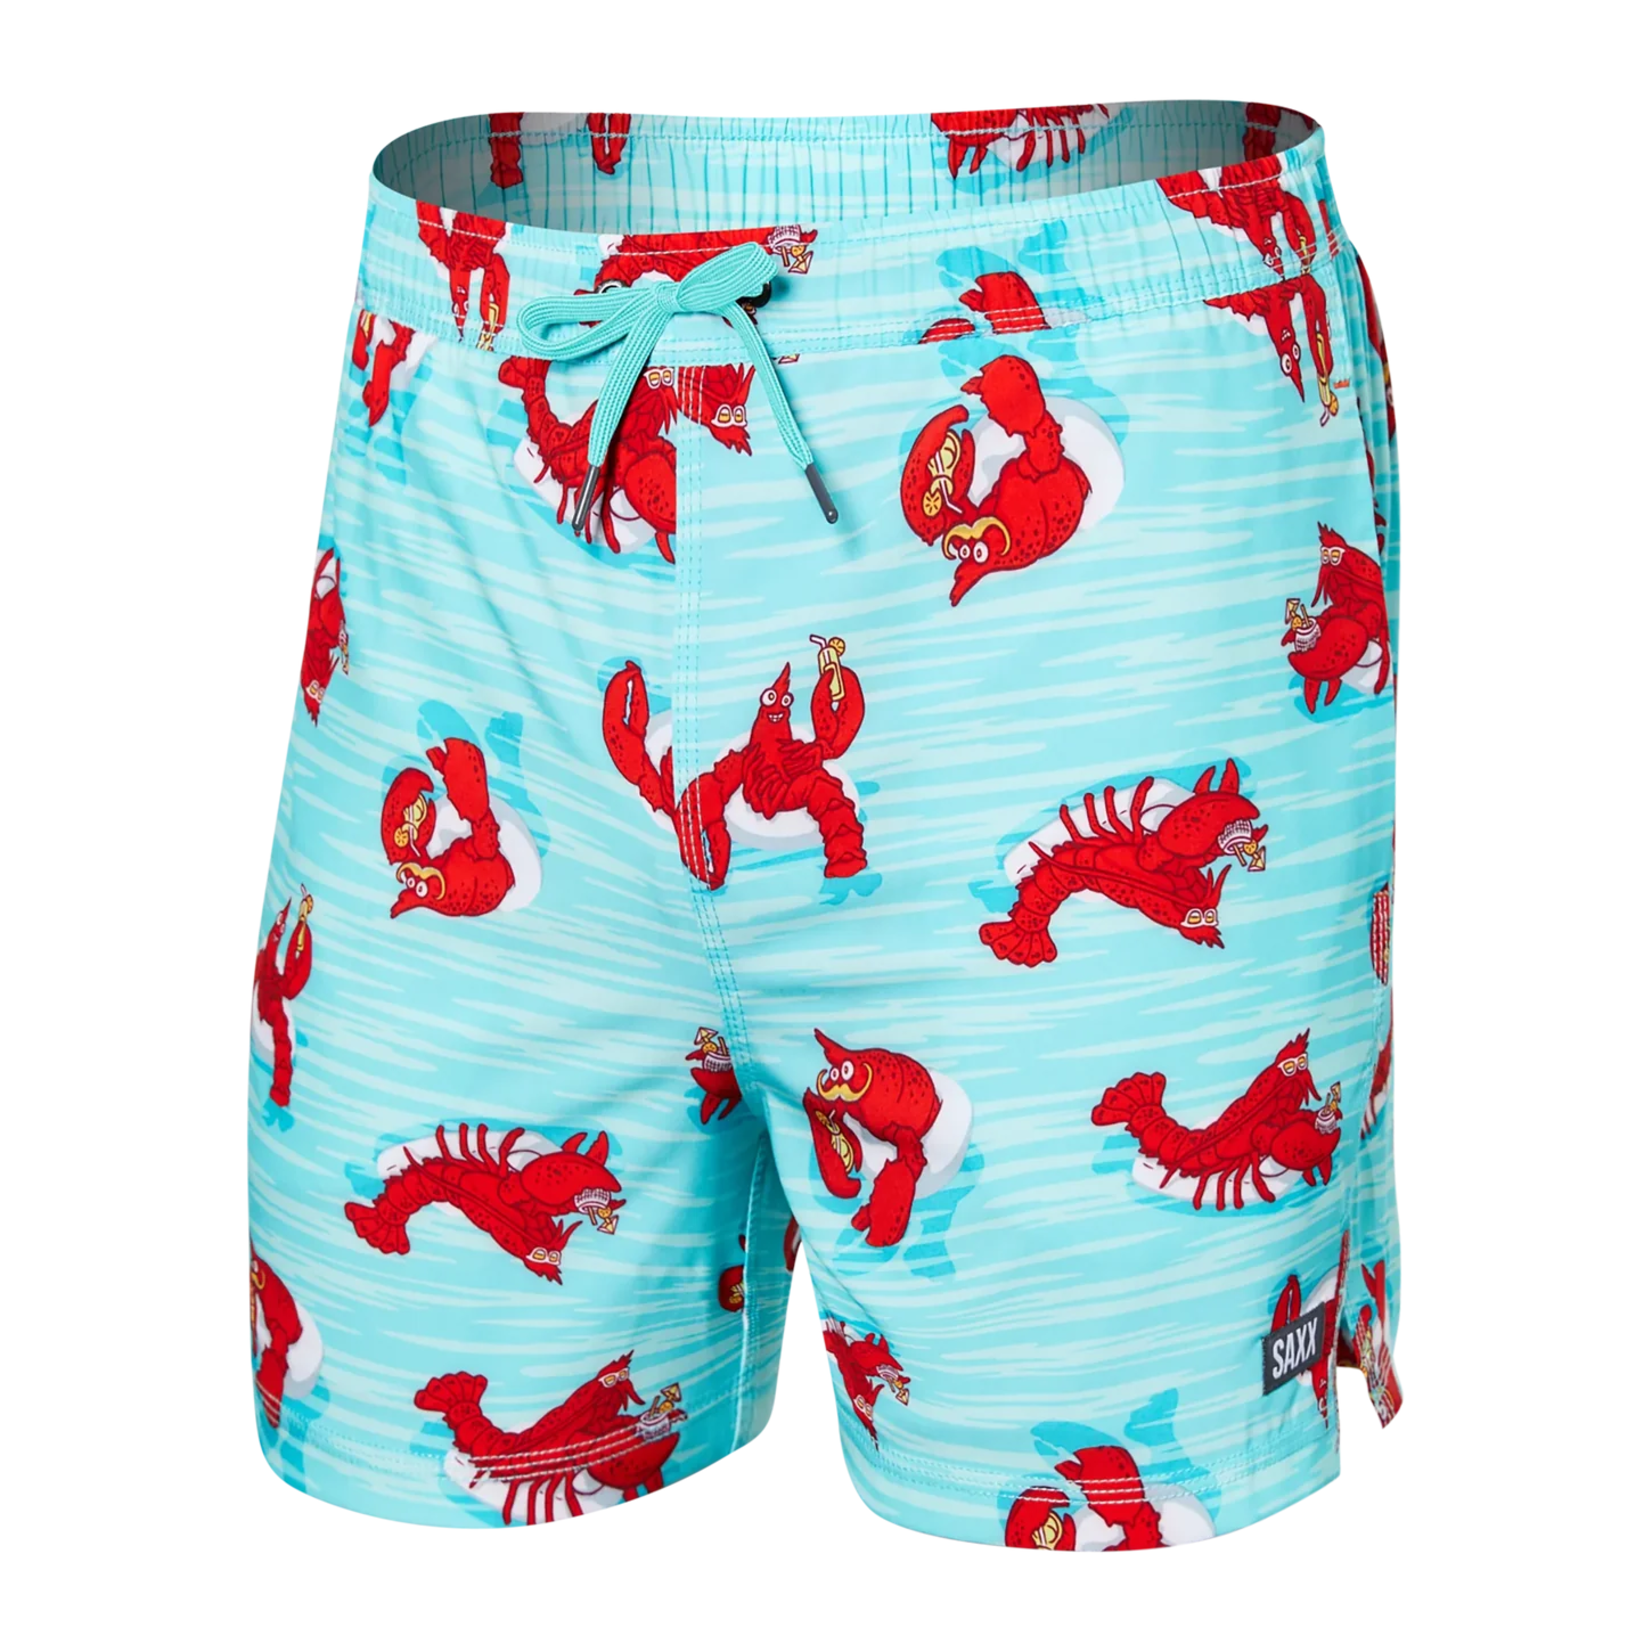 SAXX OH BUOY STRETCH VOLLEY Swim Shorts 7" / Lobster Lounger- Aqua